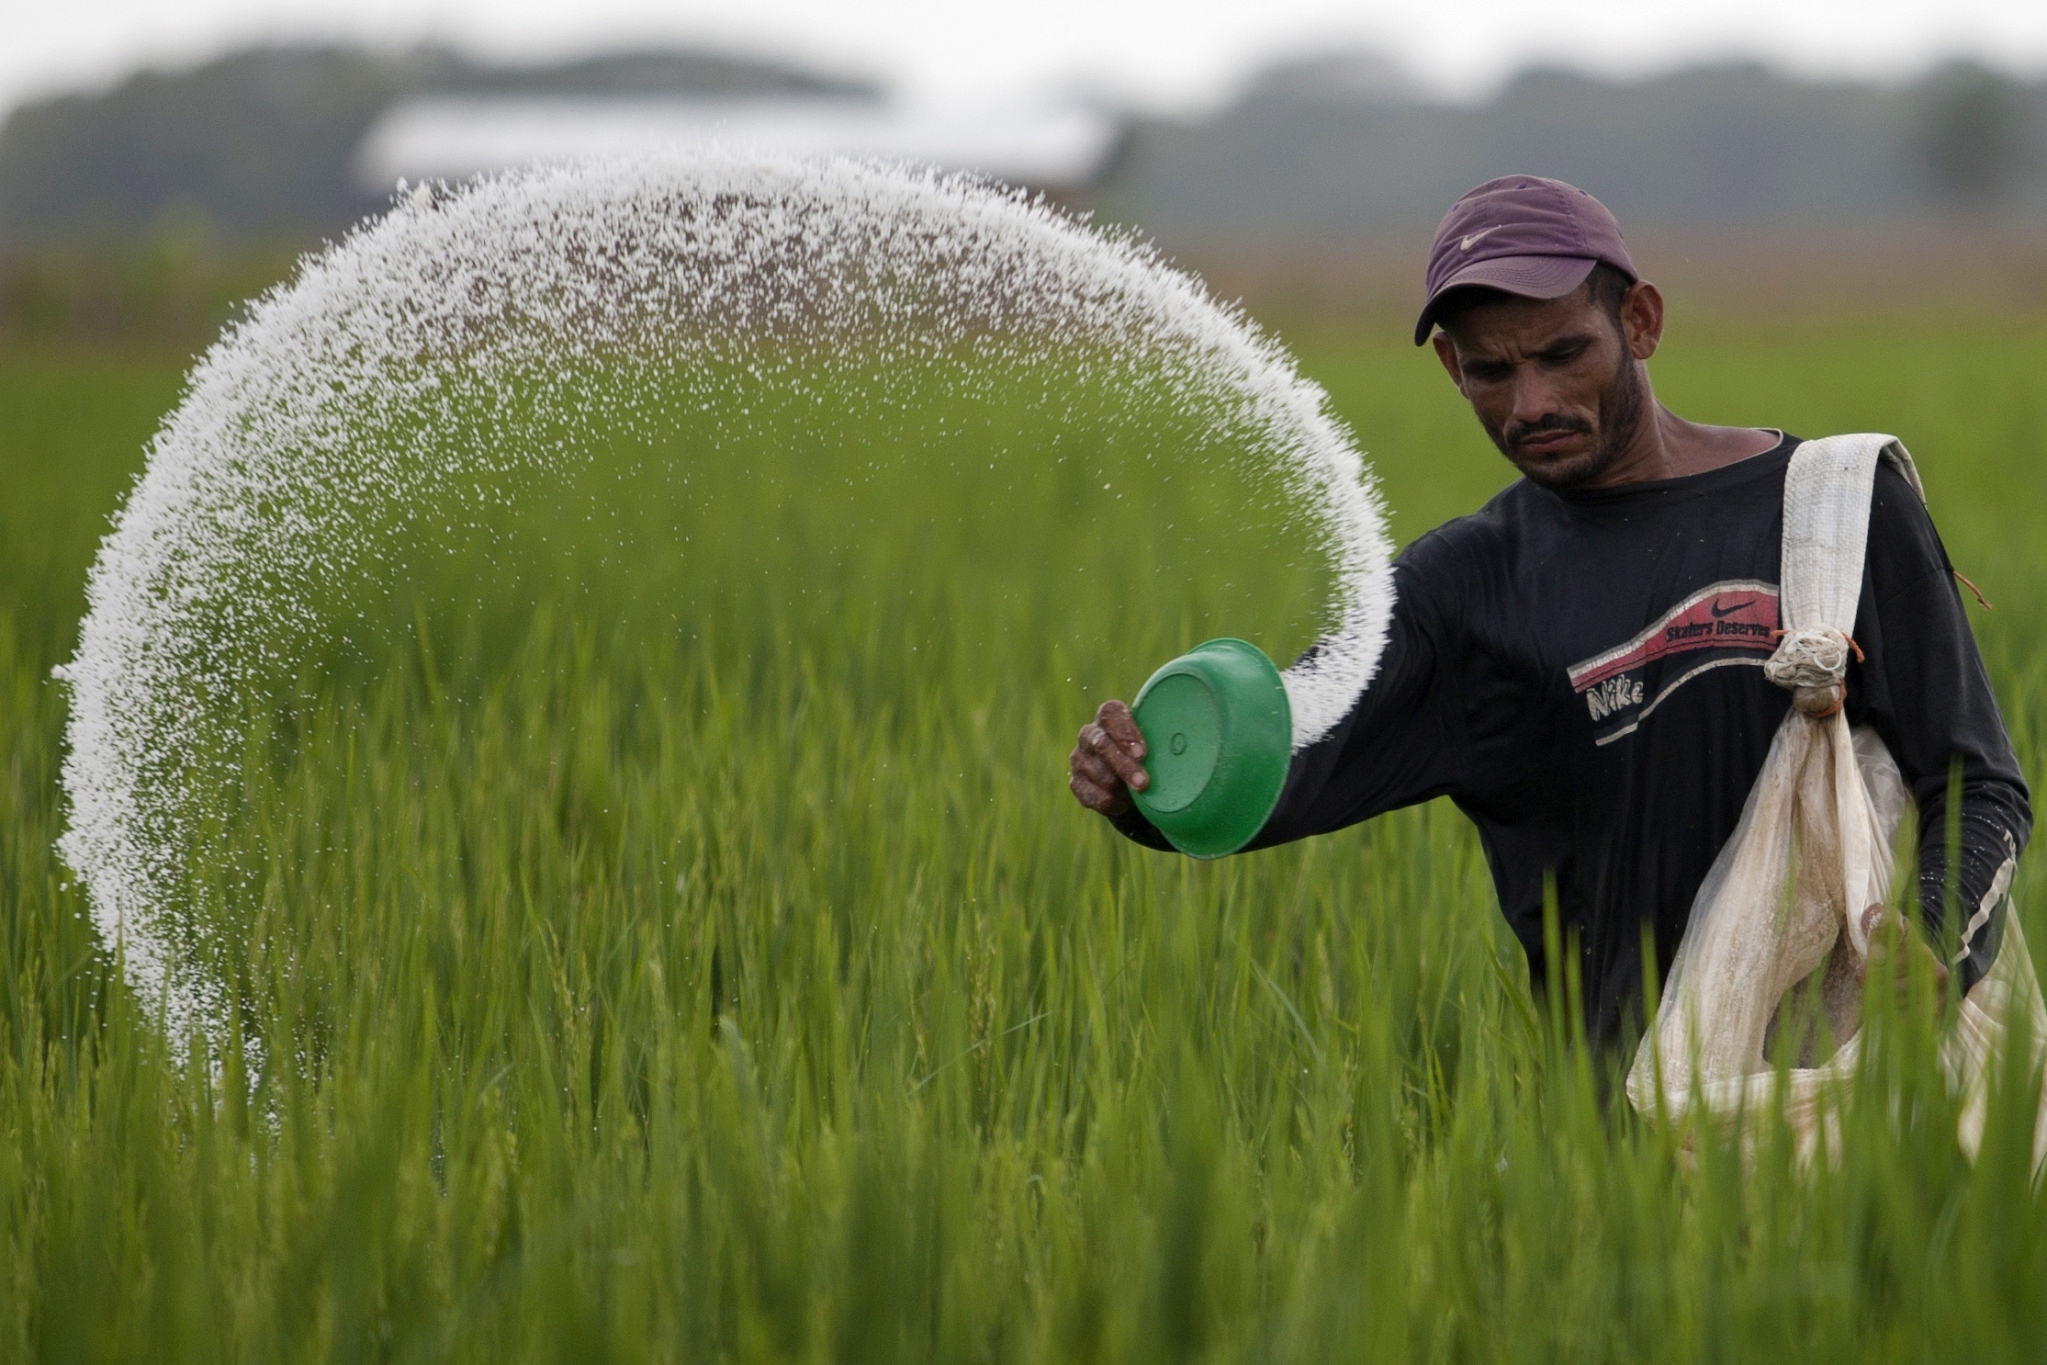 A farmer using fertilizer